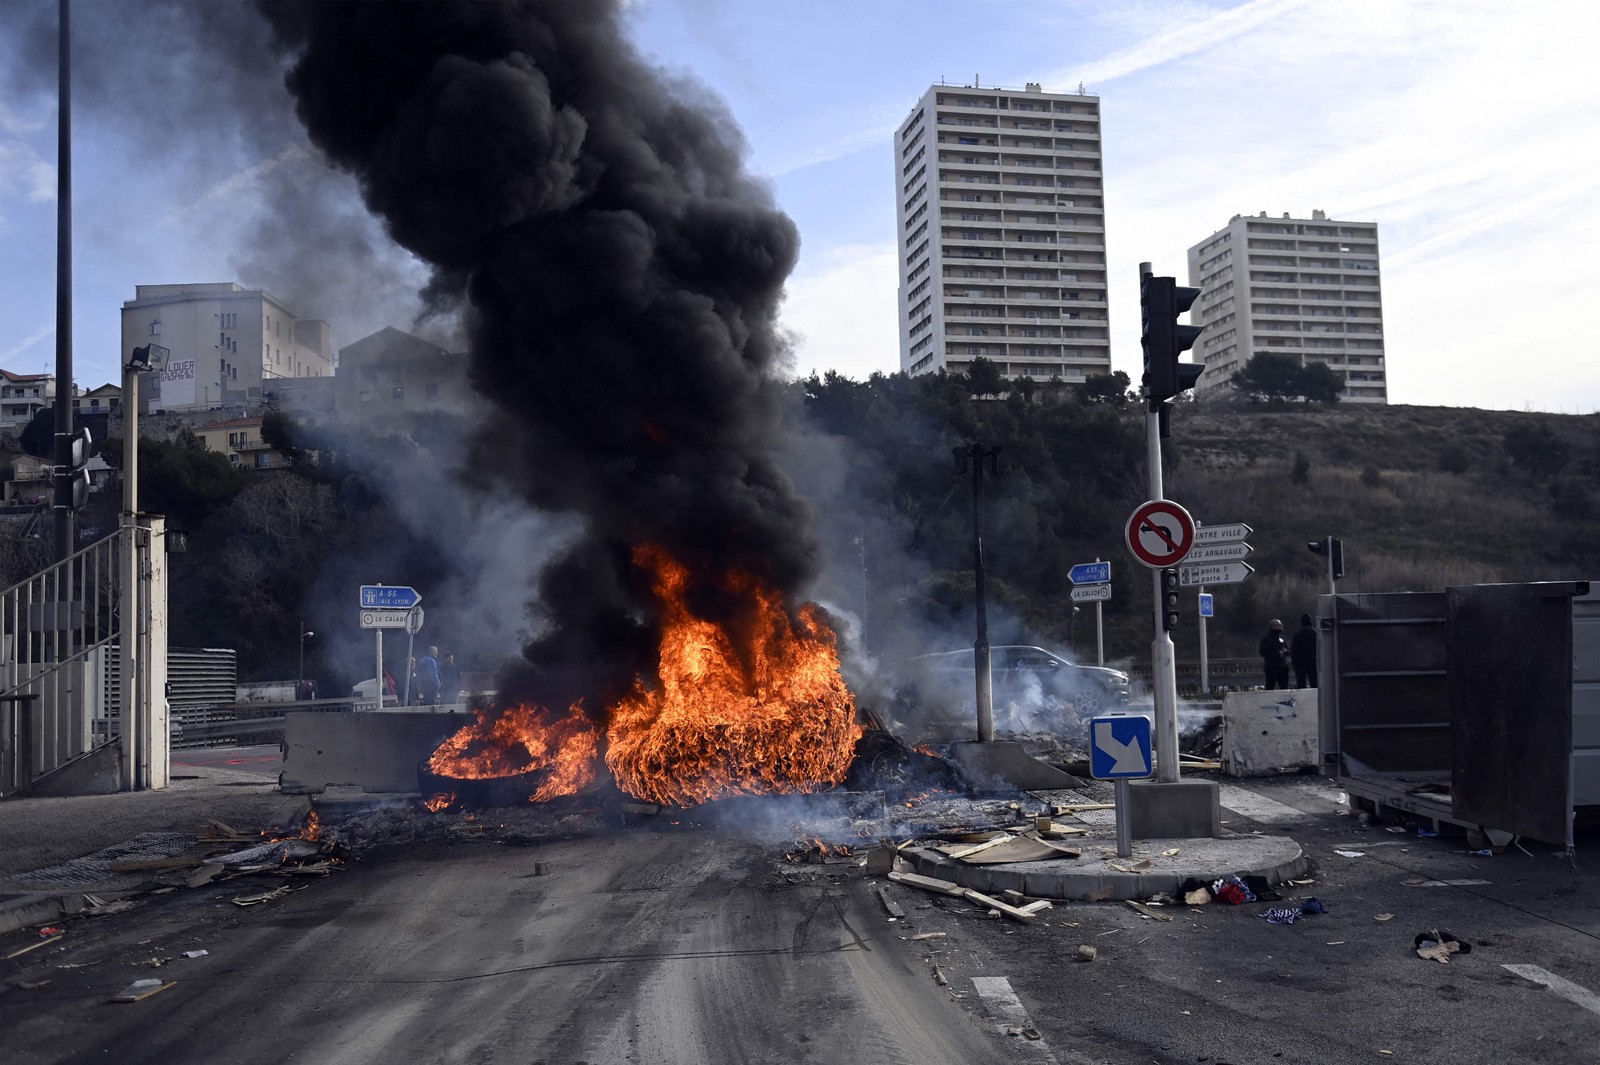 Manifestante colocam fogo em barricada durante protesto contra reforma da previdência na França, em Marselha — Foto: CLEMENT MAHOUDEAU/AFP